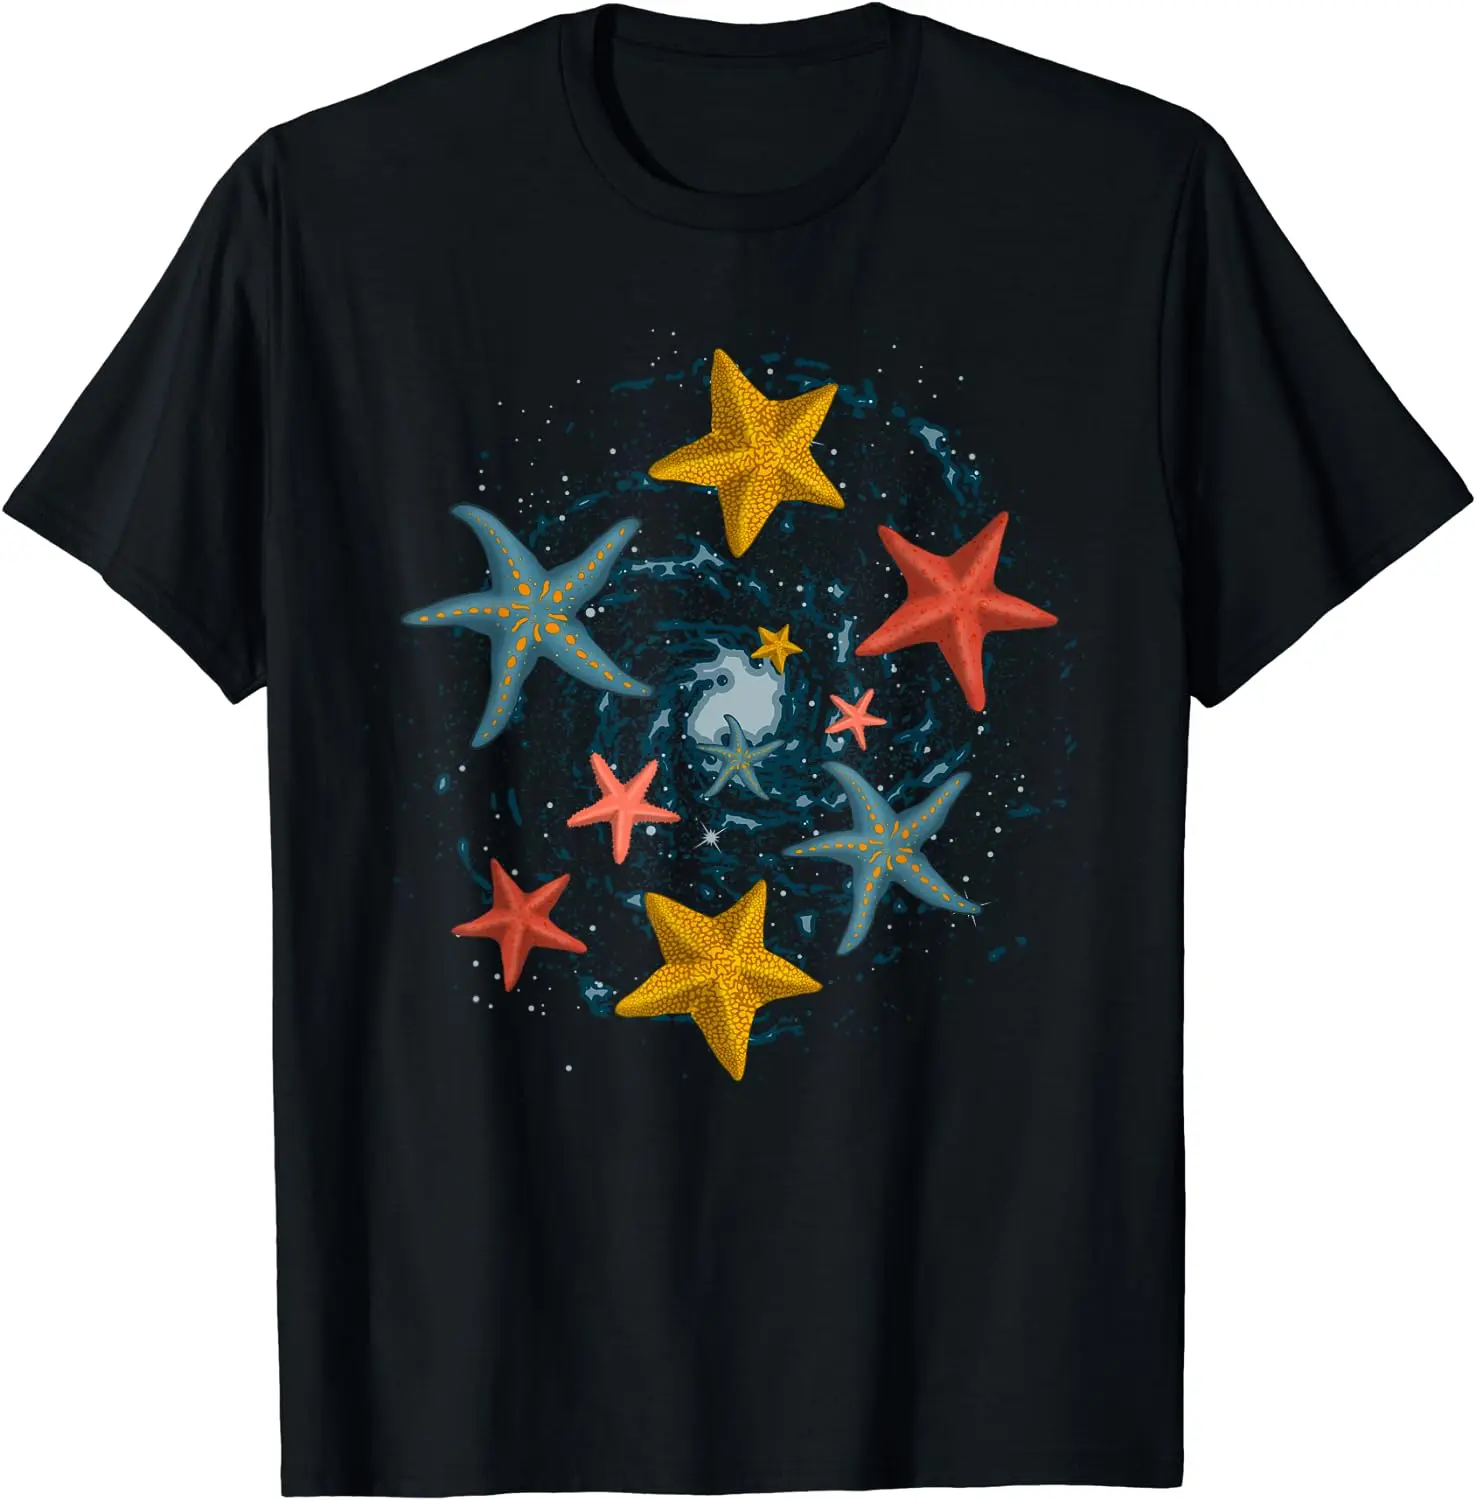 

Хлопковая футболка с коротким рукавом для мужчин и женщин, с изображением морских животных, влюбленных, аквариумов, морских звезд